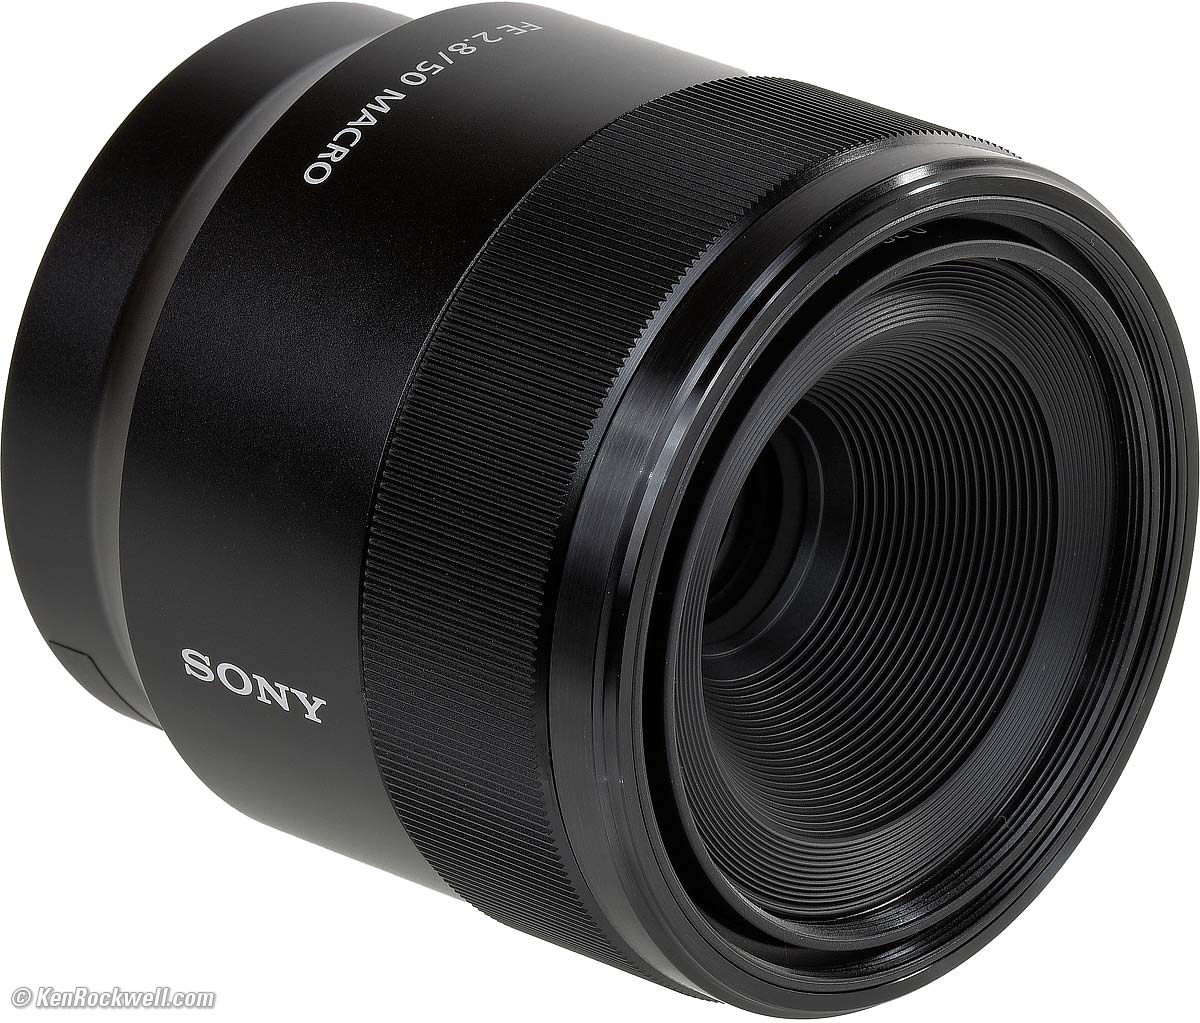 Sony 50mm купить. Sony a 50mm Lens. Sony sel-50f25. Объектив Sony Fe 50mm f/2.8 macro. Sony Carl Zeiss Planar t* Fe 50mm f/1.4 za.